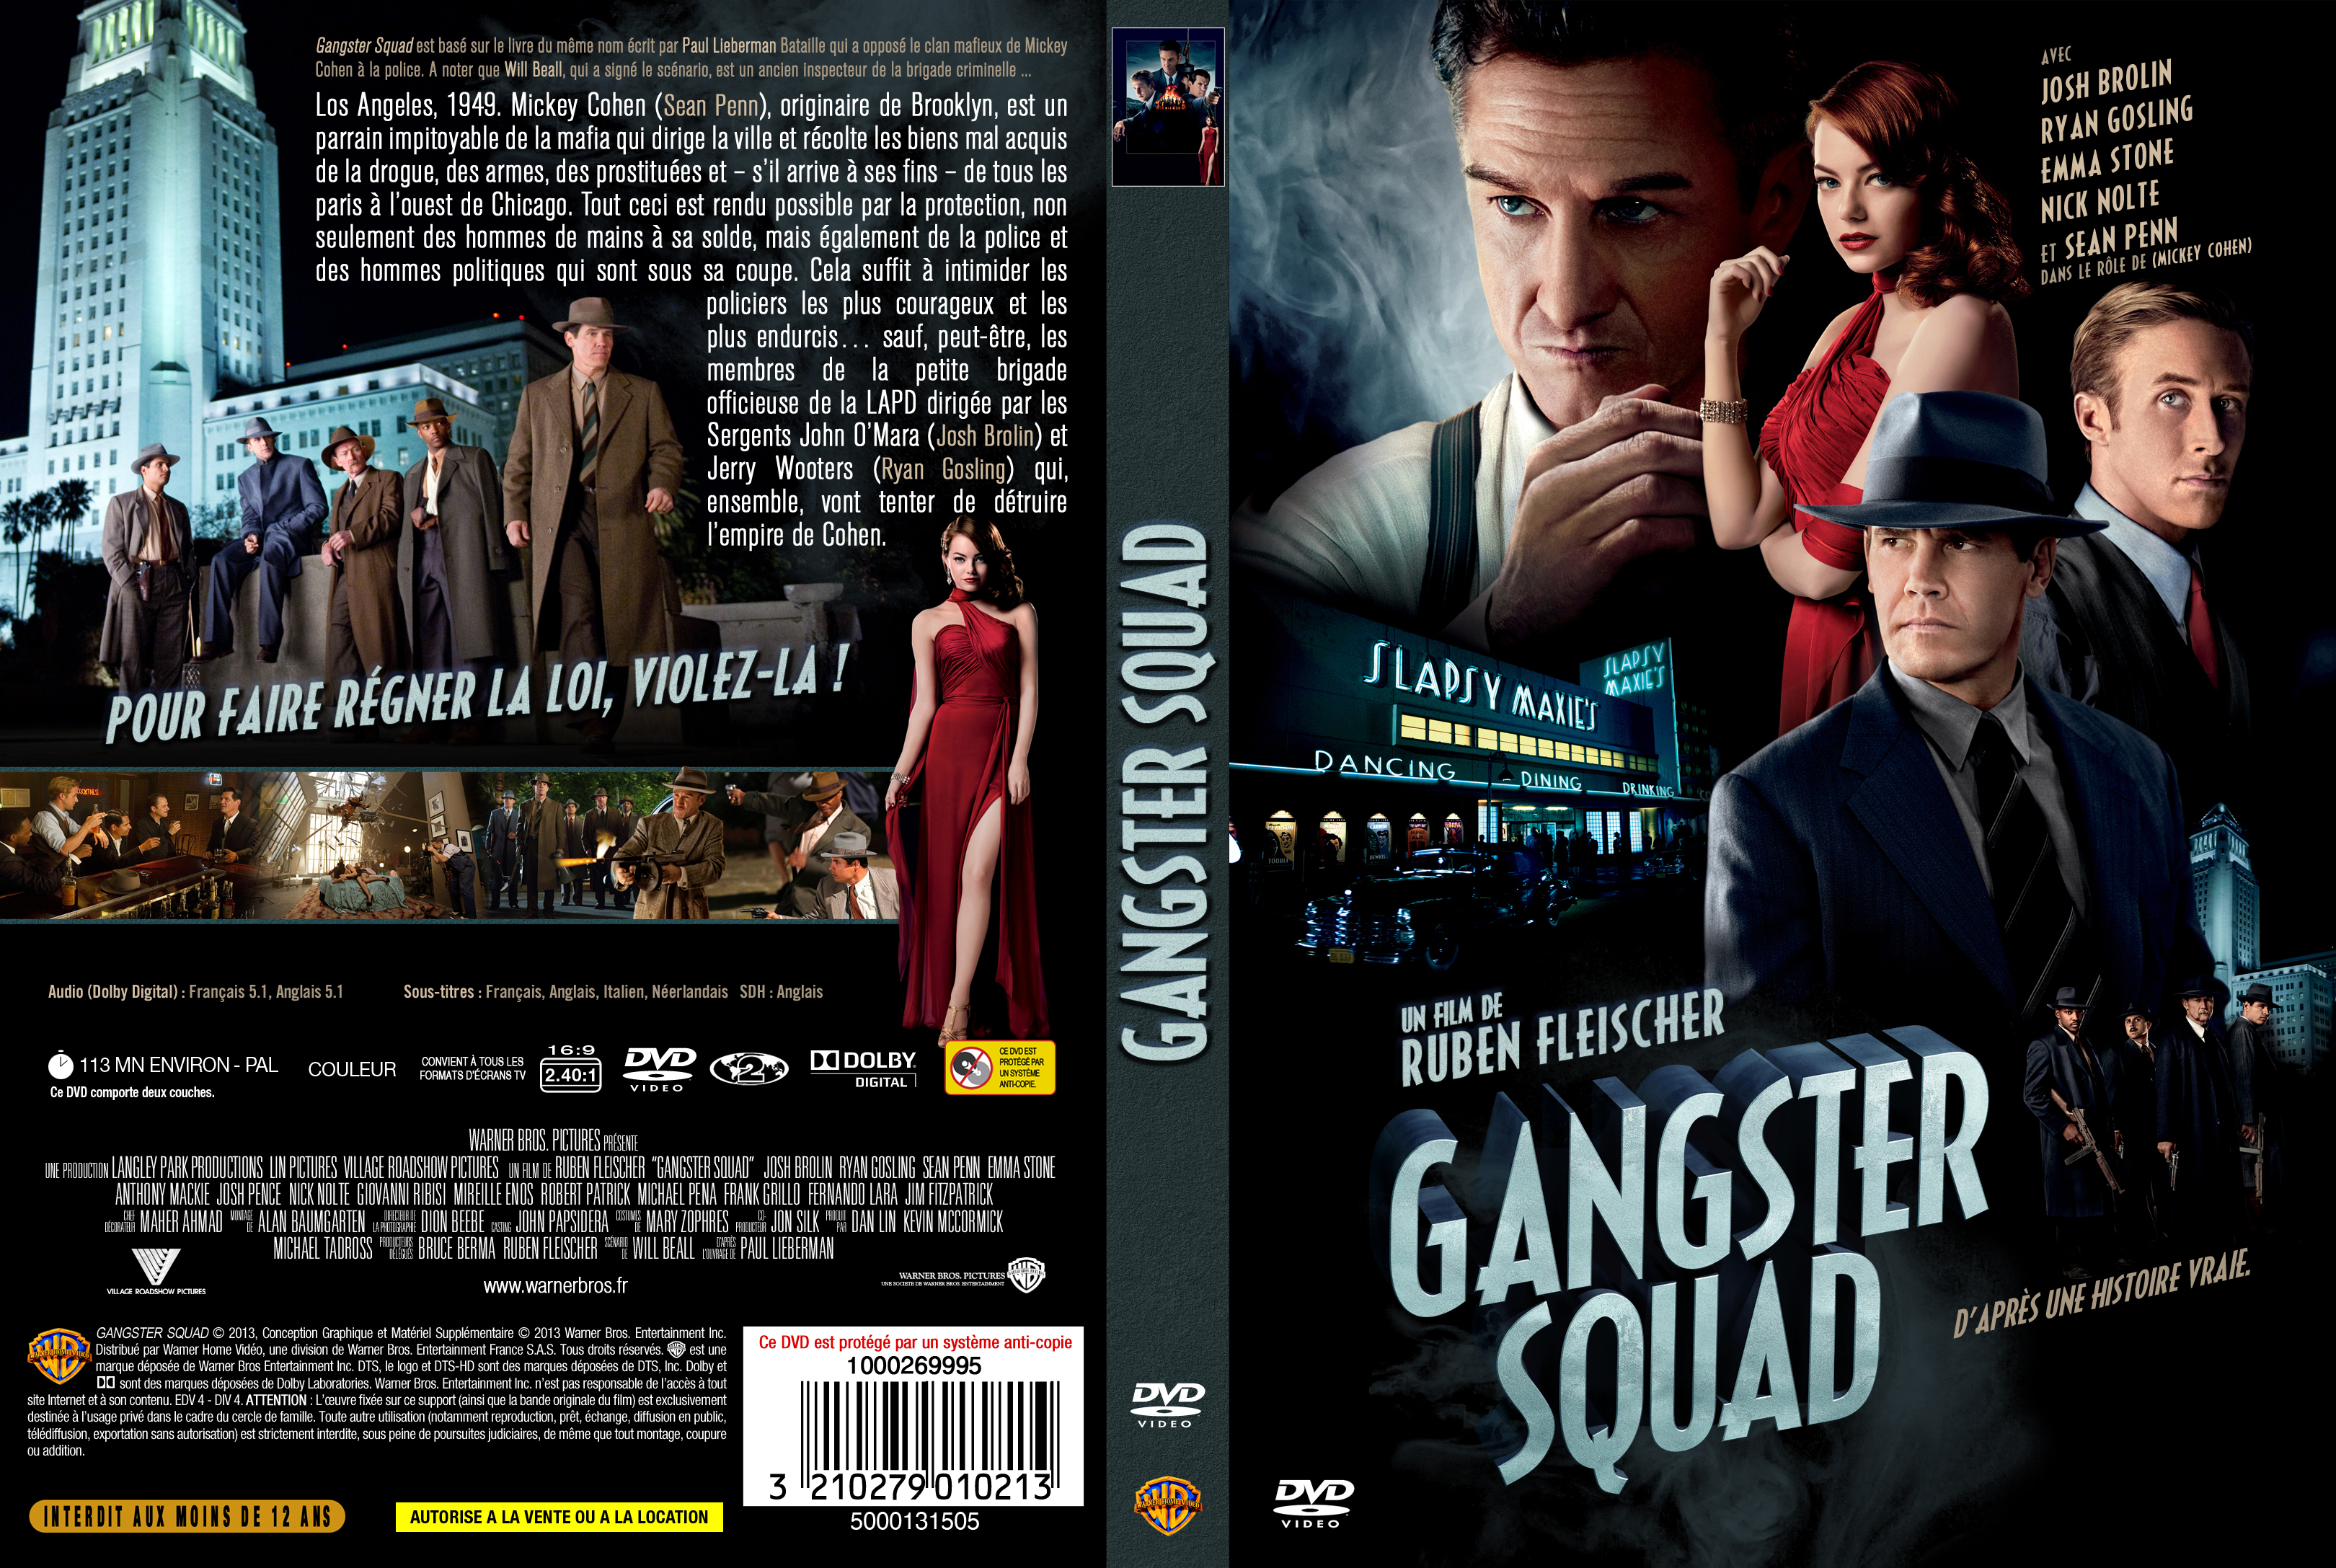 Jaquette DVD Gangster squad custom v2